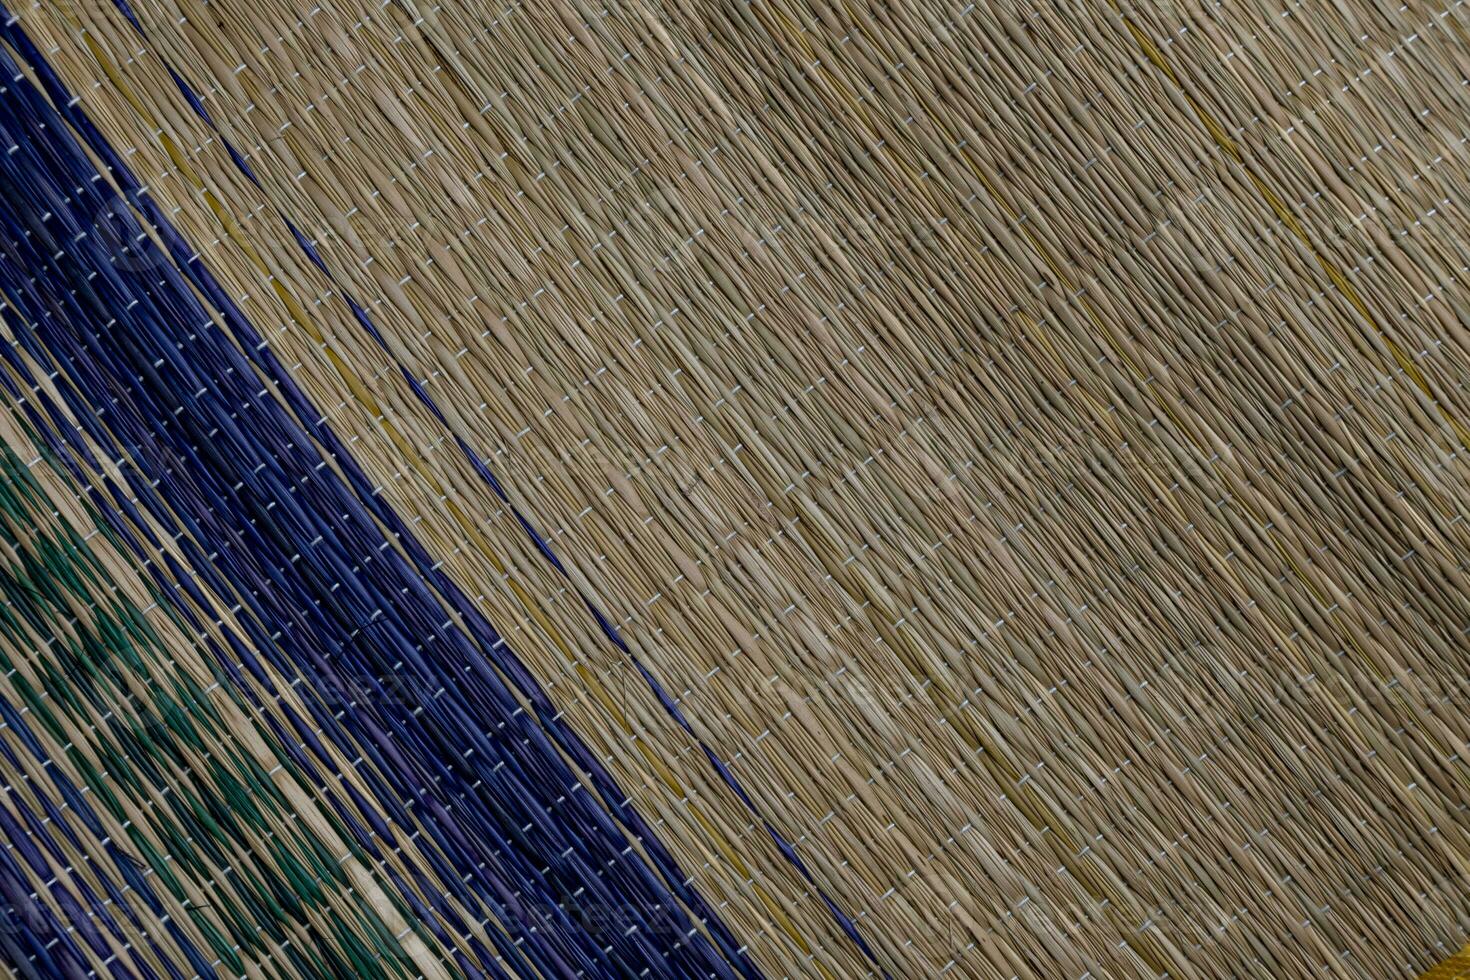 bambu esteira textura fundo abstrato fundo foto